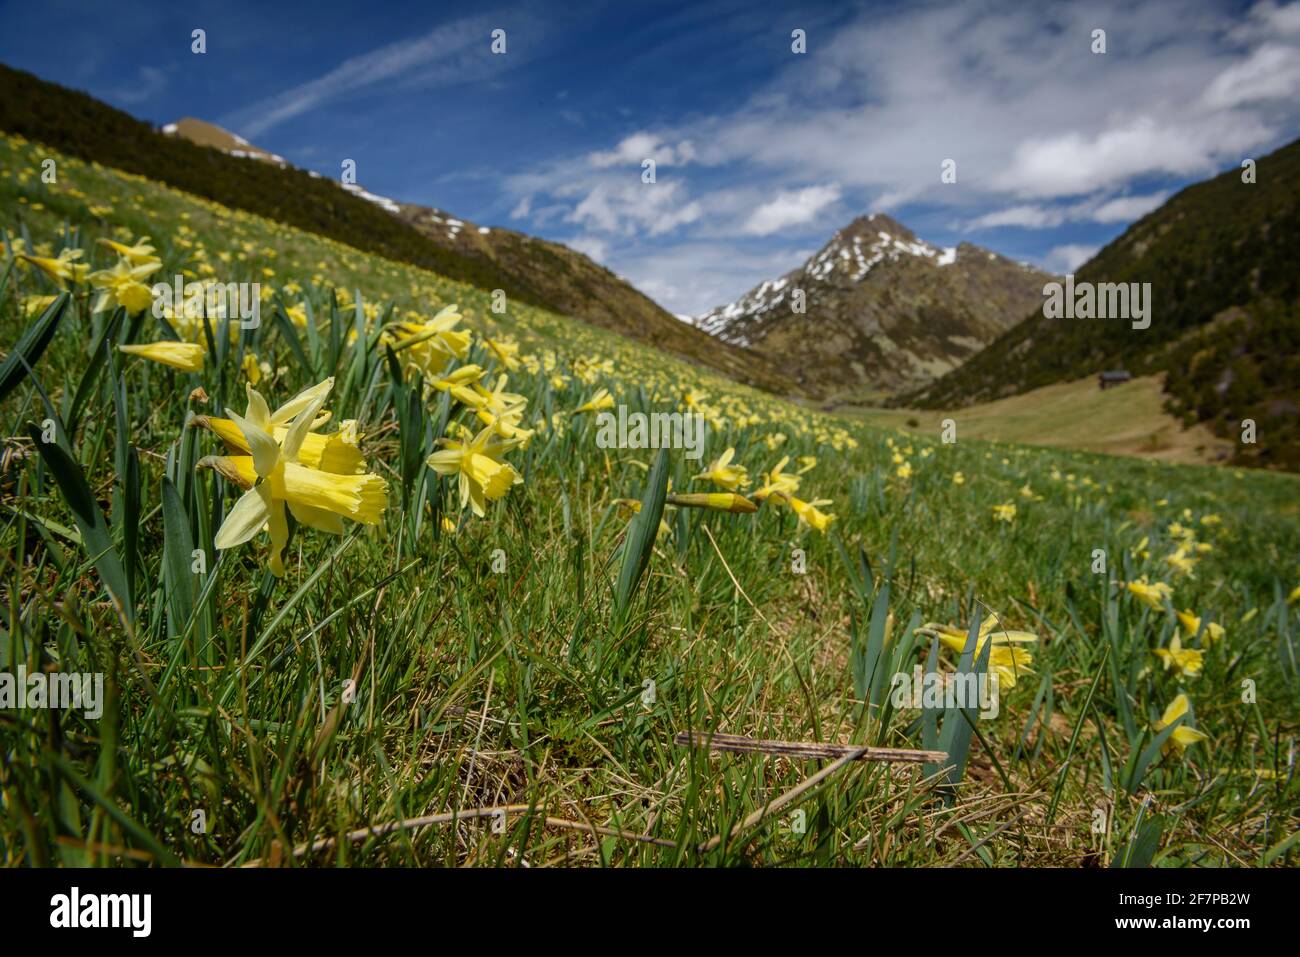 Jonarcisse sauvage (Narcissus pseudoquisse) dans la vallée des Incles au printemps (Andorre, Pyrénées) ESP: Narciso amarillo en el valle de Incles en primavera Banque D'Images